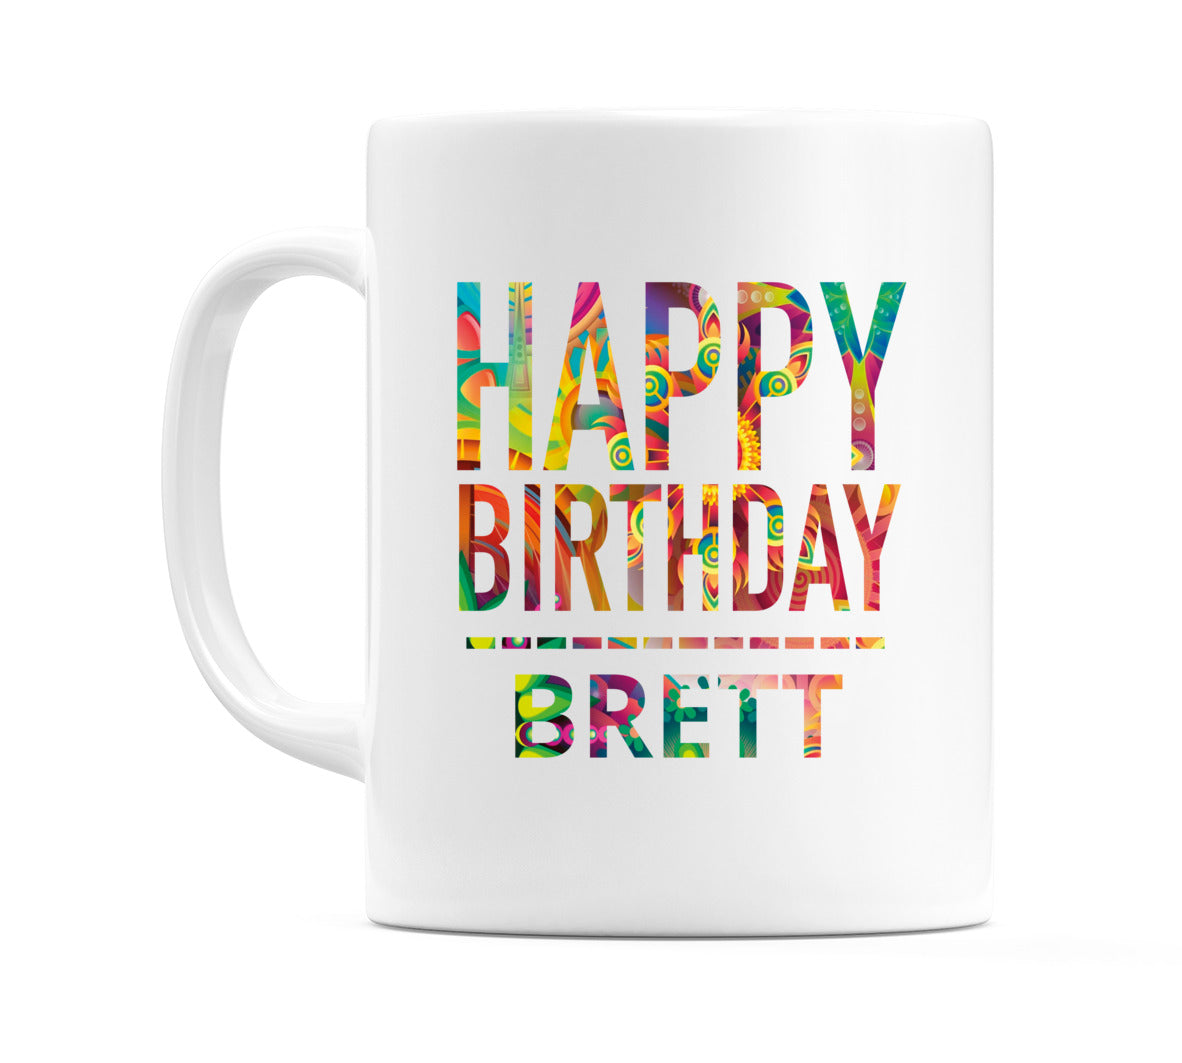 Happy Birthday Brett (Tie Dye Effect) Mug Cup by WeDoMugs